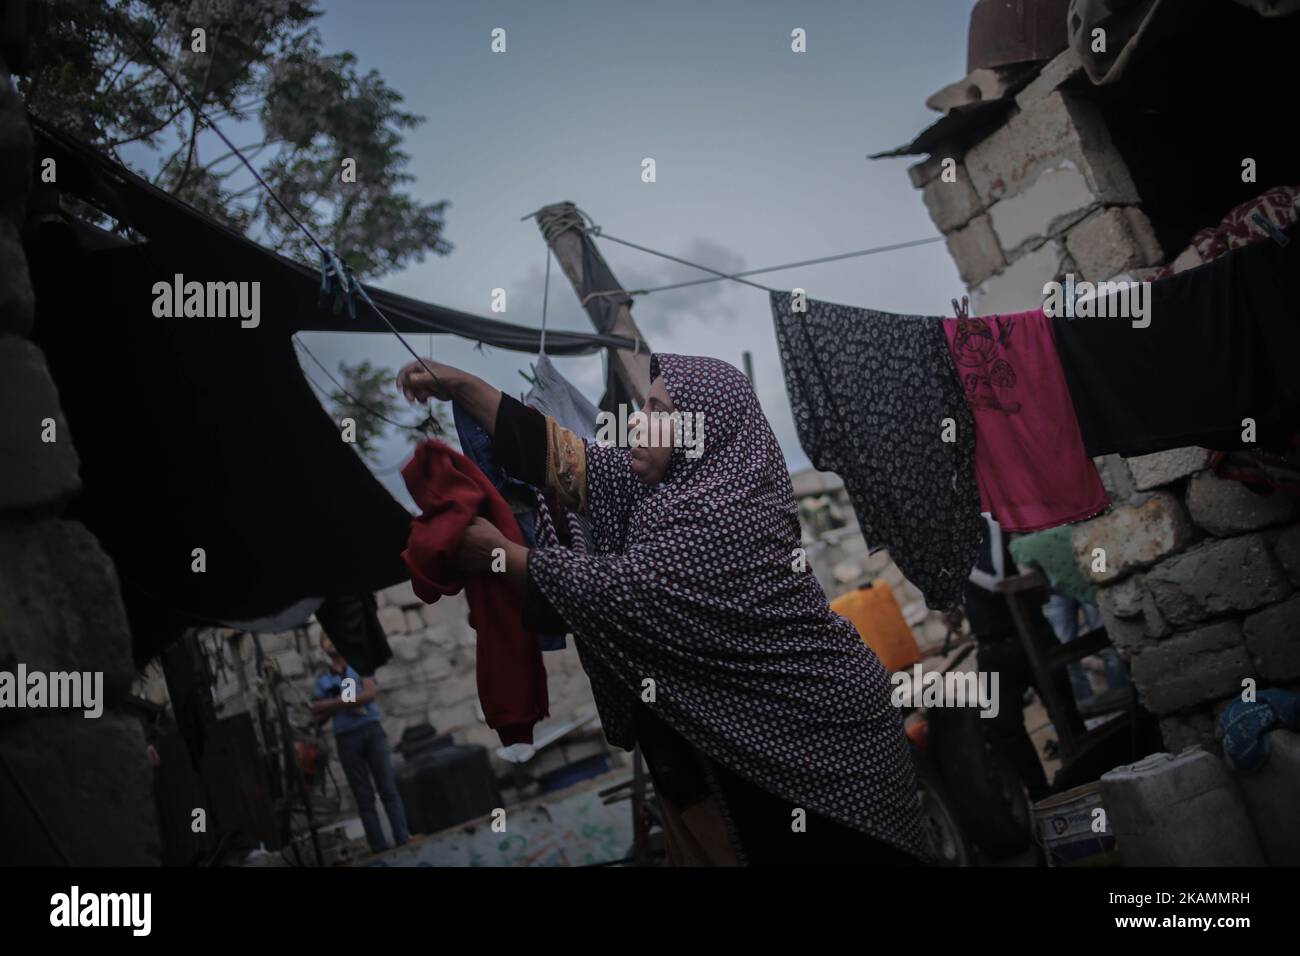 Eine palästinensische Flüchtlingsfrau wäscht sich während eines Stromausfalls im Flüchtlingslager Khanyounis im südlichen Gazastreifen in der Nähe eines Feuers Kleidung, am 23. April 2017. Die meisten Palästinenser im Gazastreifen verwenden Batterien, Generatoren oder Kerzen, um ihre Häuser anzuzünden. Die Bewohner von Gaza, wo rund 1,8 Millionen Menschen leben, erleben täglich rund 20 Stromausfälle. Berichten zufolge ging der einzige funktionierende Strom im Gazastreifen am 16. April 2017 aus dem Treibstoff und hörte auf zu arbeiten. Der Betrieb des Werks der Gaza Power Generating Company funktioniert in der Regel nur acht Stunden am Tag, nachdem der Brennstoff durch den israelischen Ker in den Gazastreifen eingedringen ist Stockfoto